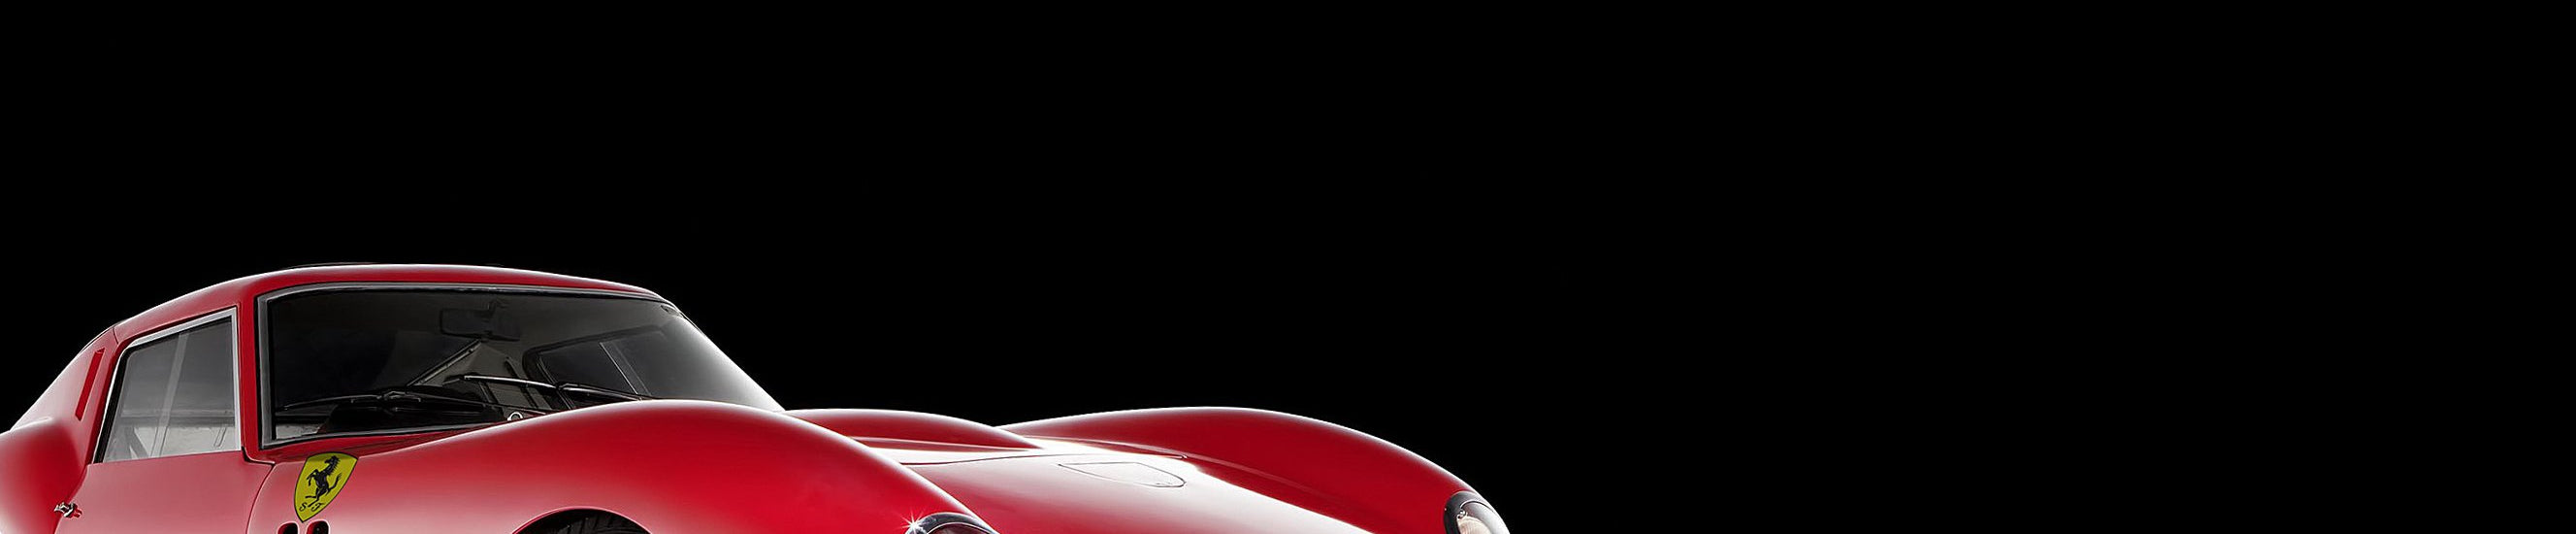 法拉利250 GTO系列